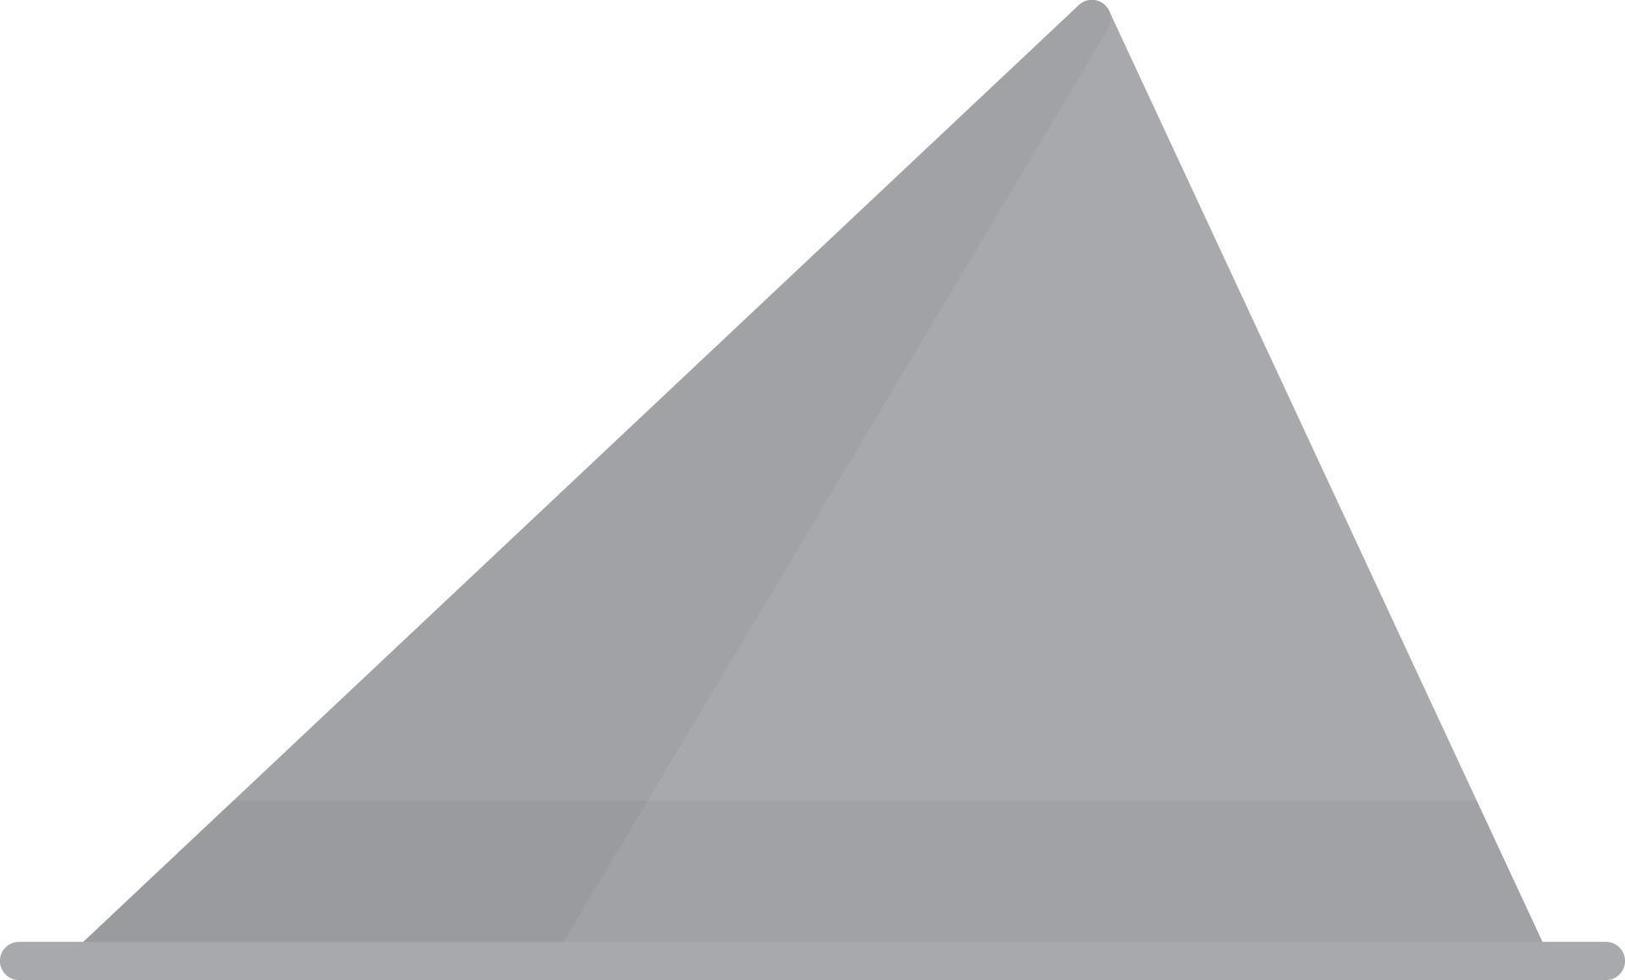 pyramide plat niveaux de gris vecteur